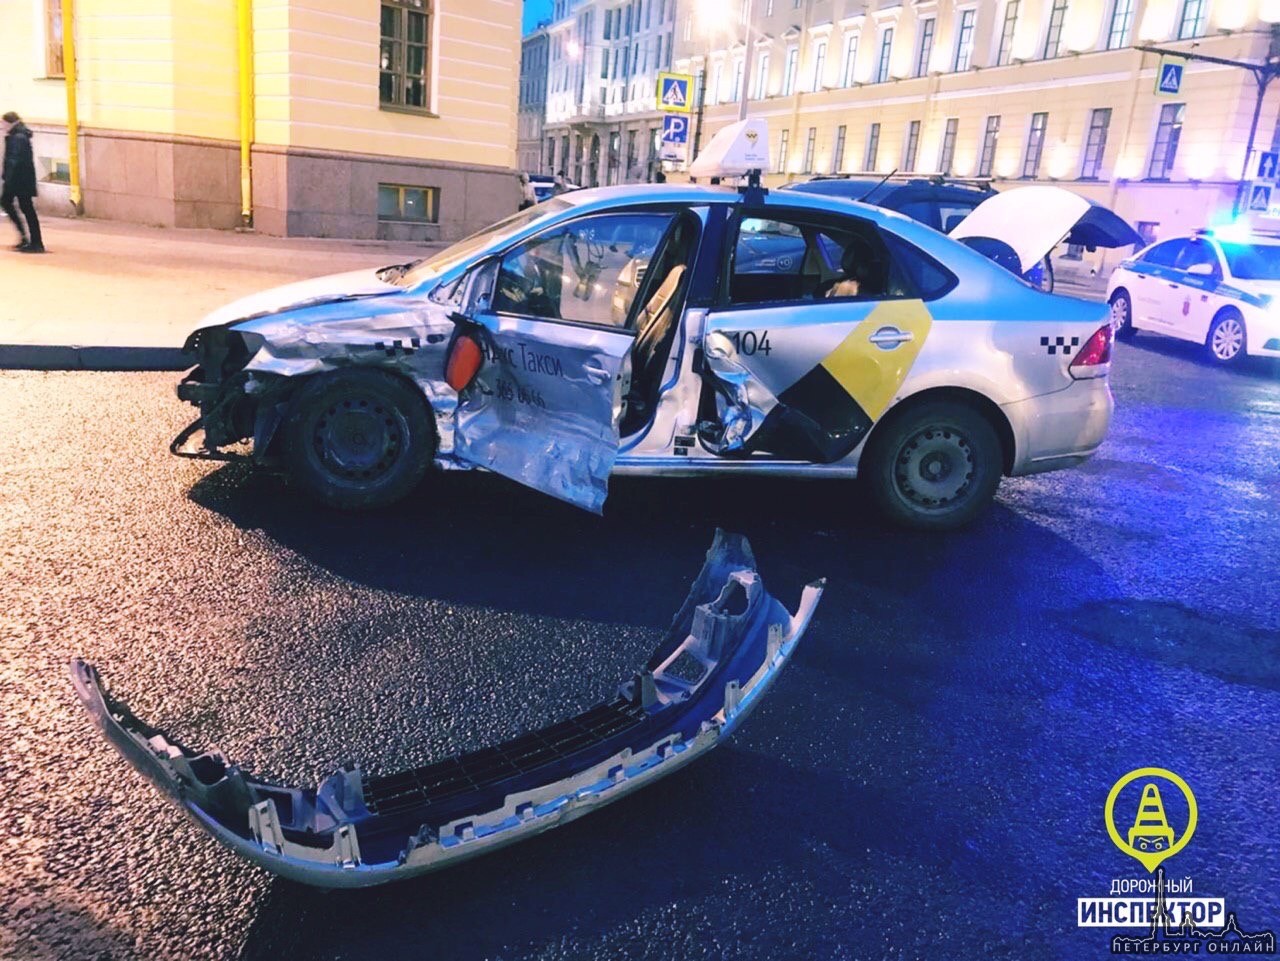 В 16:50 на Малой Морской у дома д.22 произошло столкновение т/с Volkswagen Поло (водитель - м.,1...